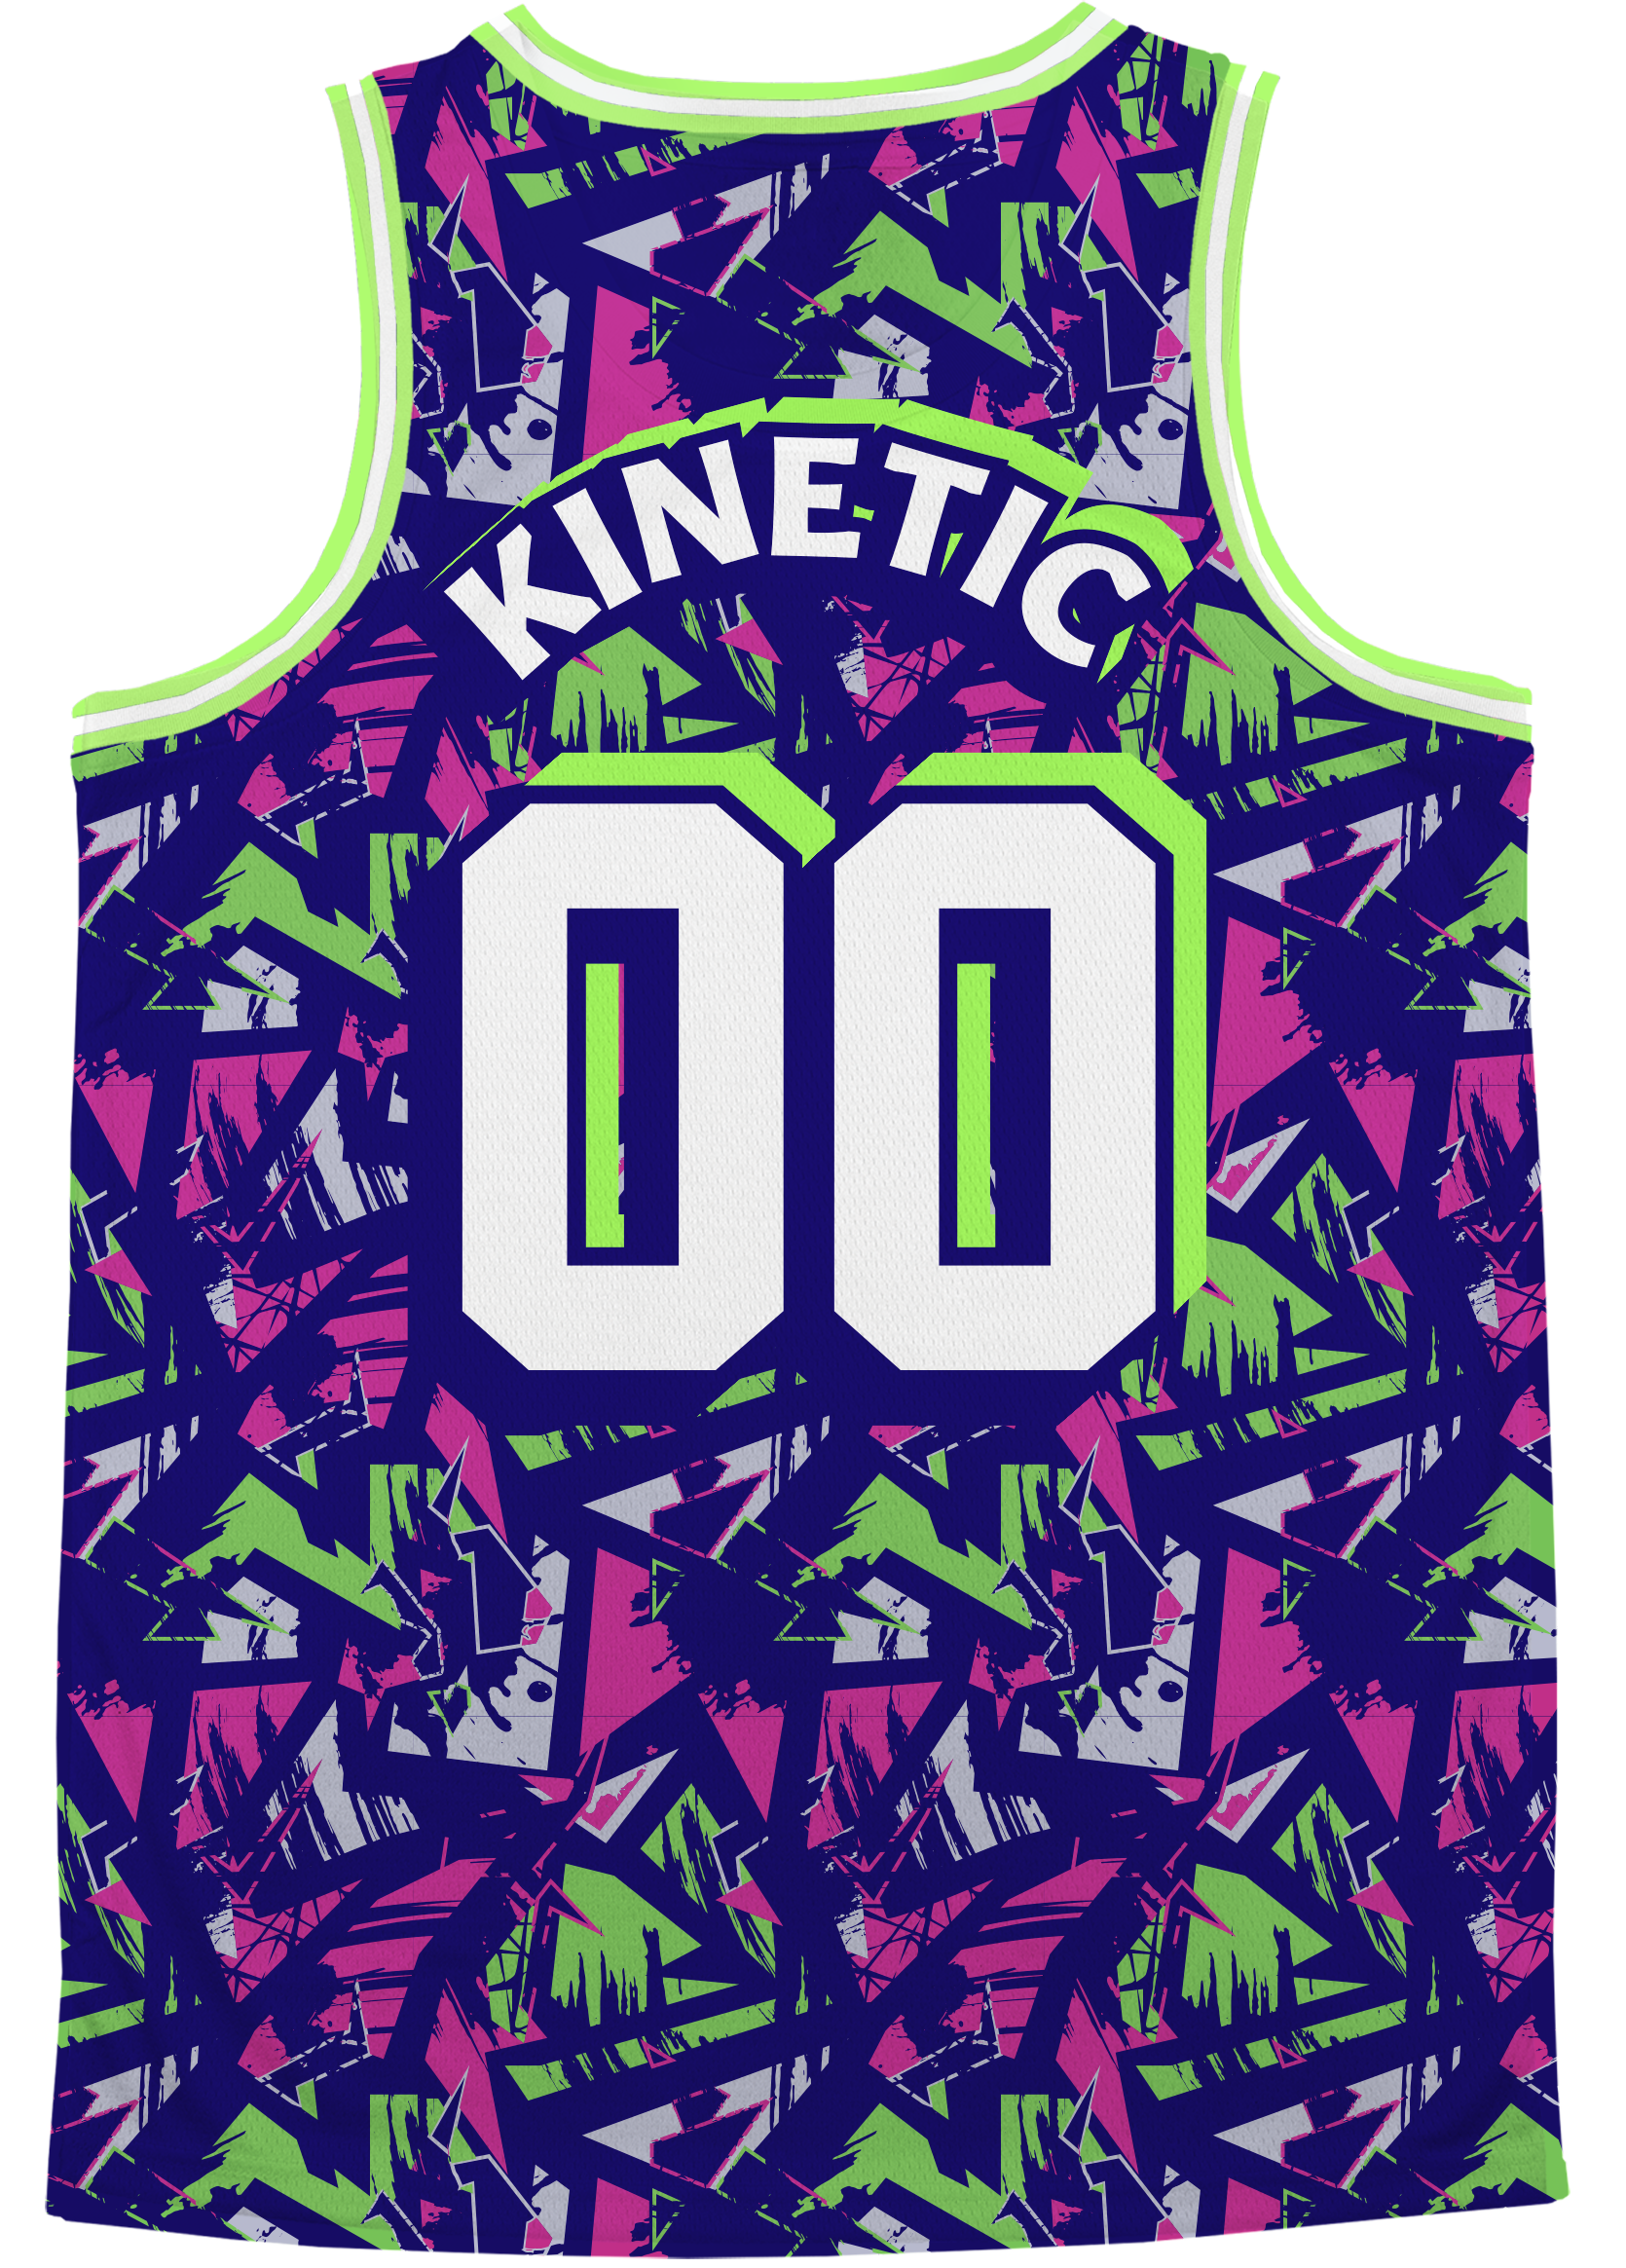 SIGMA KAPPA - Purple Shrouds Basketball Jersey